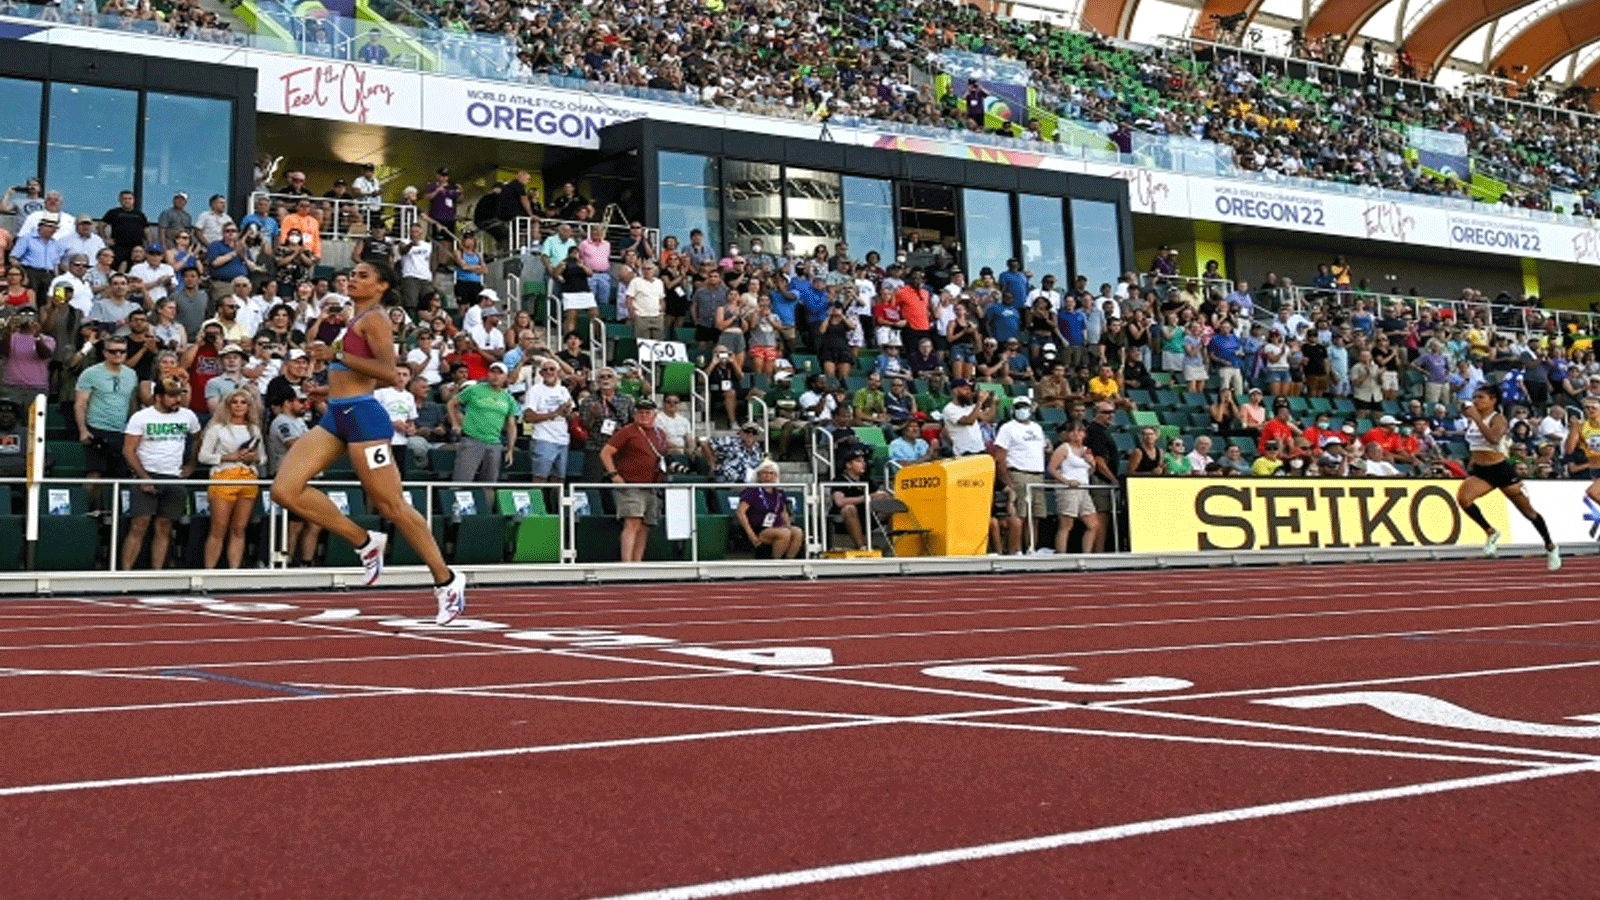 الاميركية سيدني ماكلافلين لحظة اجتيازها خط النهائي في نصف نهائي سباق 400 م حواجز في مونديال يوجين لألعاب القوى في 20 تموز/يوليو 2022.